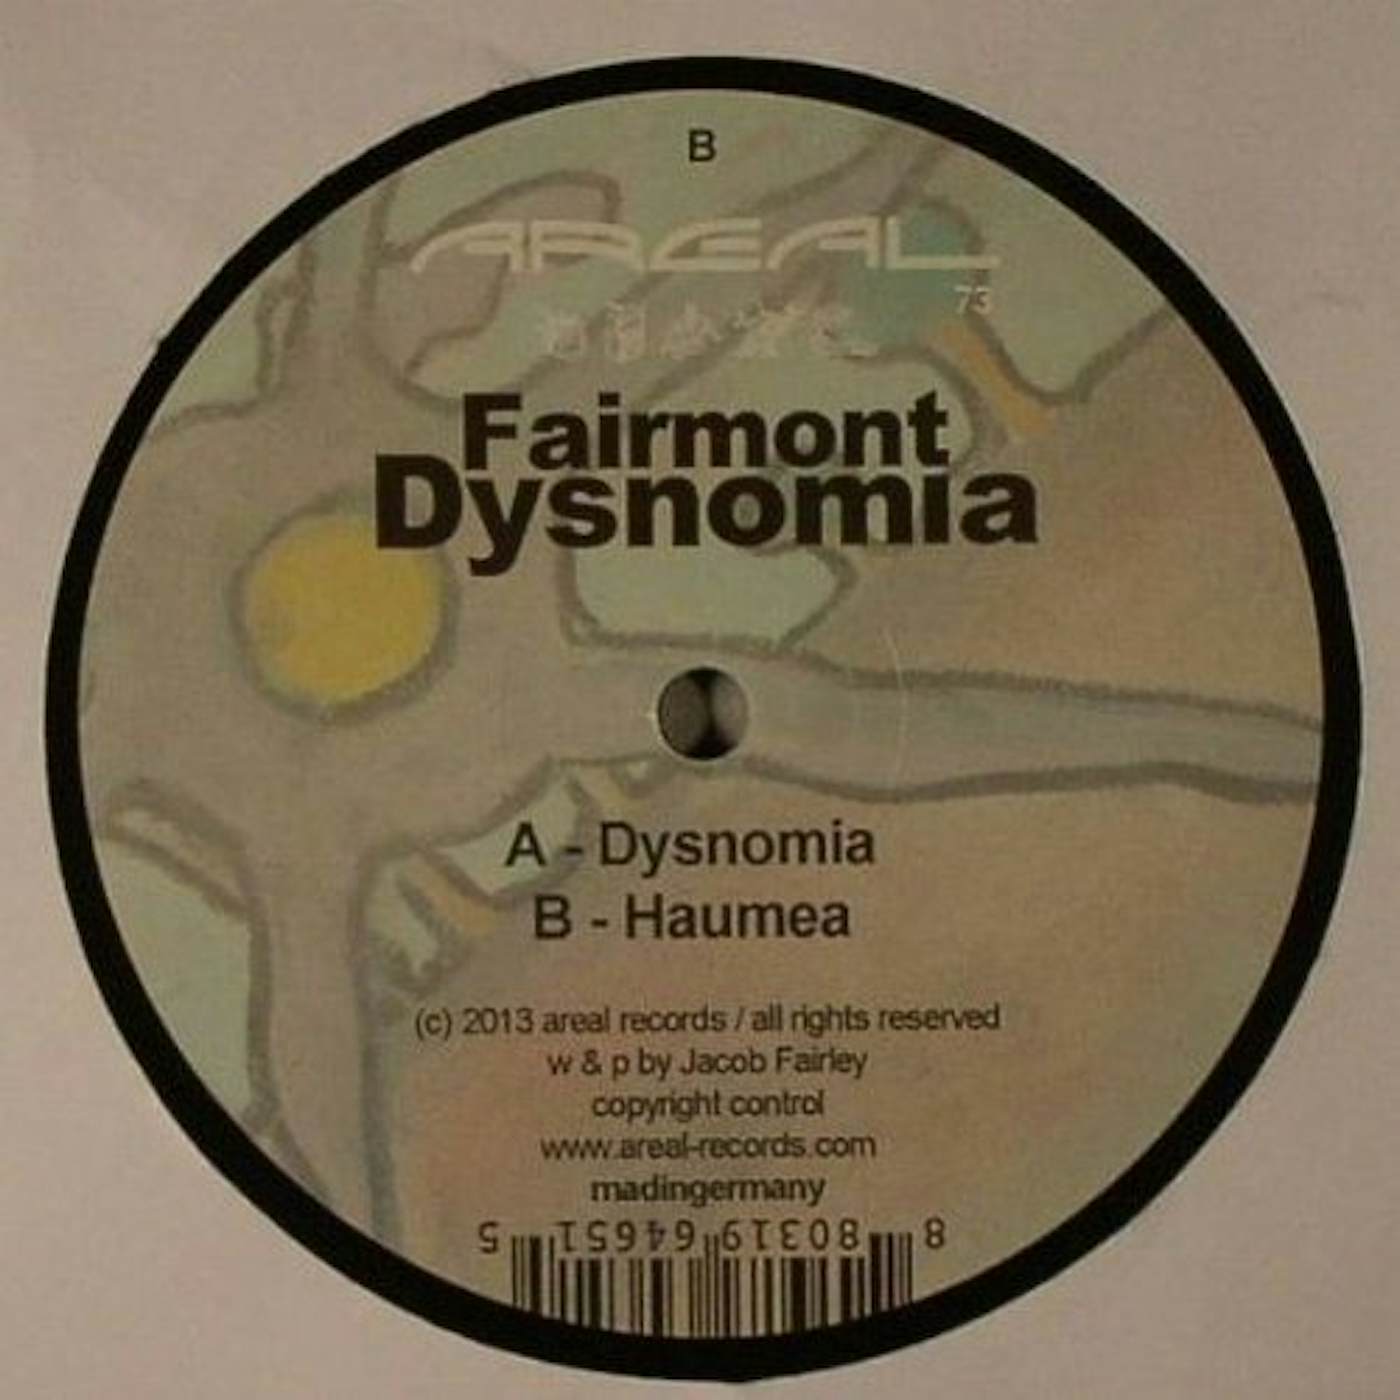 Fairmont Dysnomia Vinyl Record